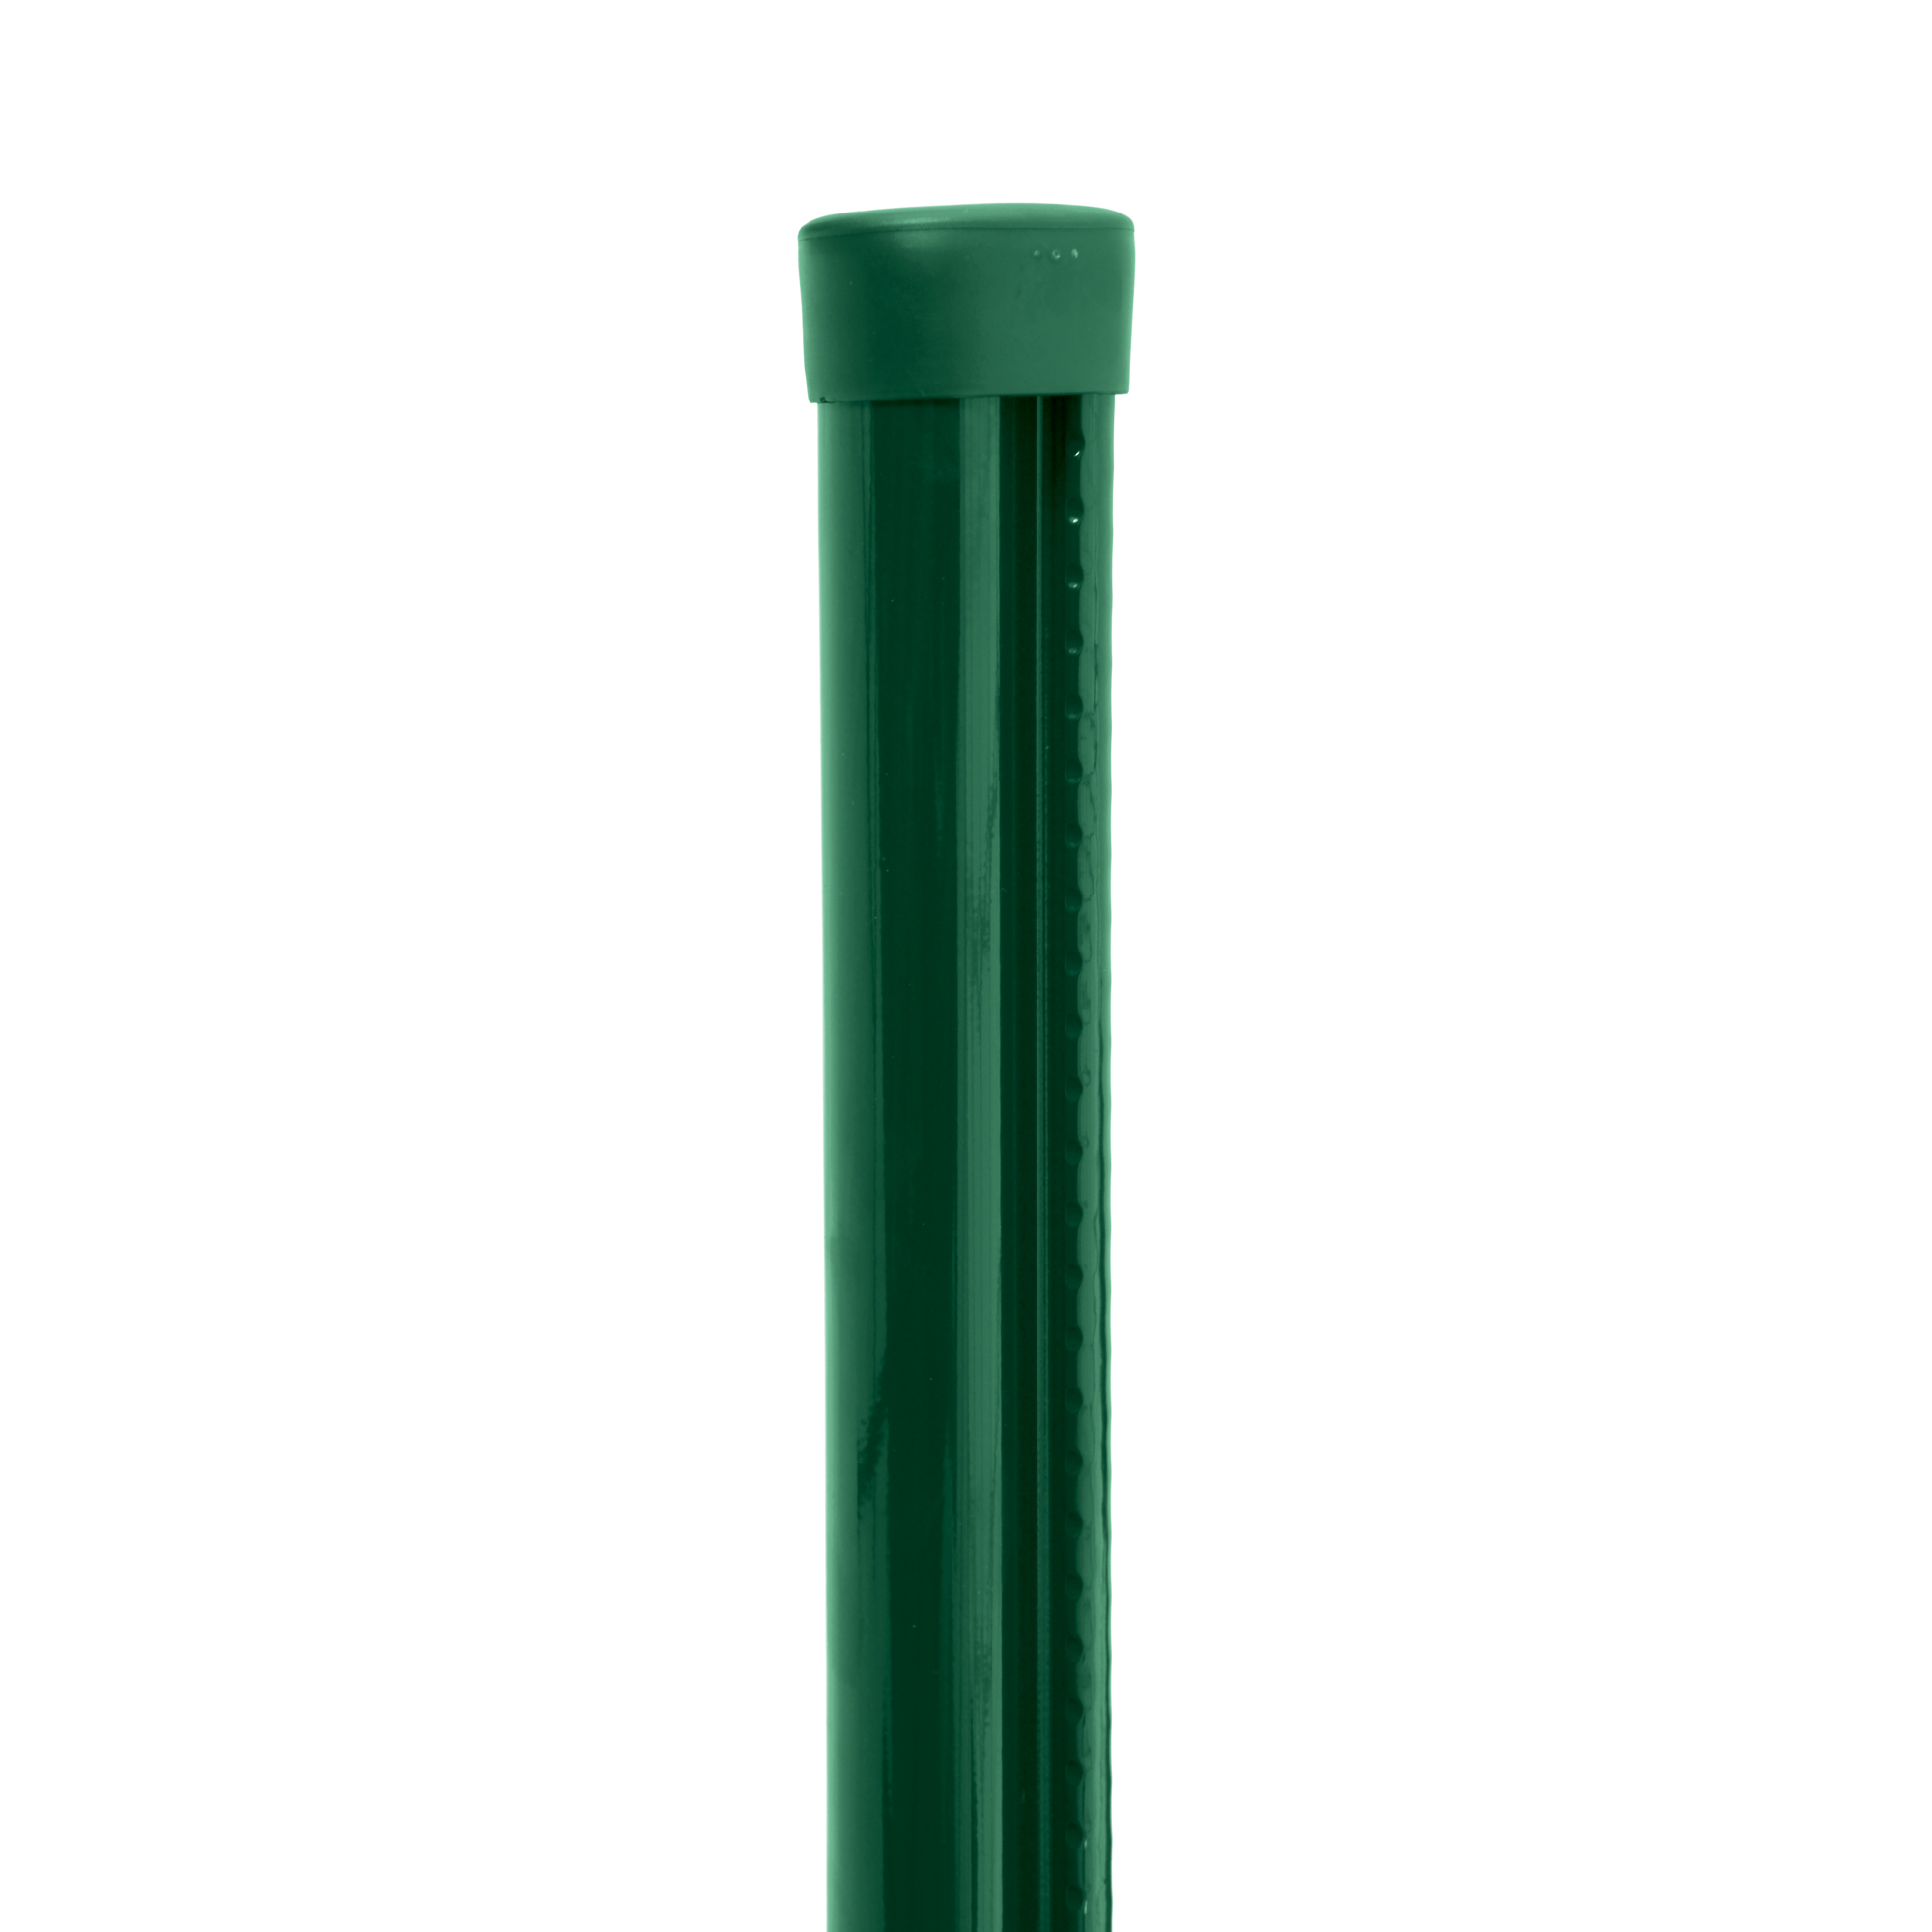 Sloupek kulatý s montážní lištou Pilclip Zn + PVC zelený průměr 48 mm výška 3